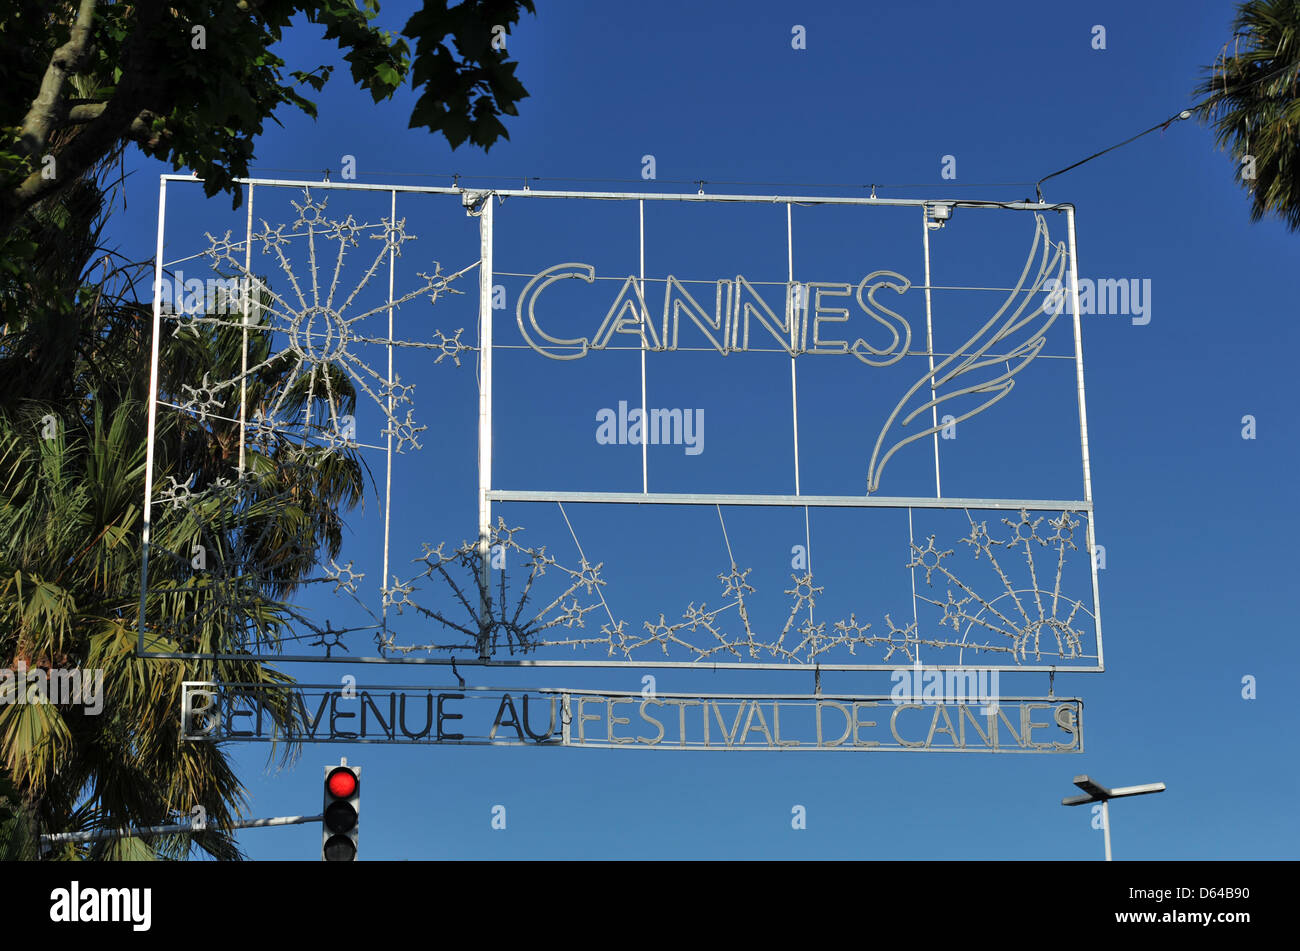 Un segno di benvenuto a leggere 'Cannes - Bienvenue au Festival de Cannes' pende su una strada di fronte al Palais des Festivals et des Congres durante il sessantacinquesimo Cannes Film Festival di Cannes, Francia, 22 maggio 2012. Foto: Andreas Gebert Foto Stock